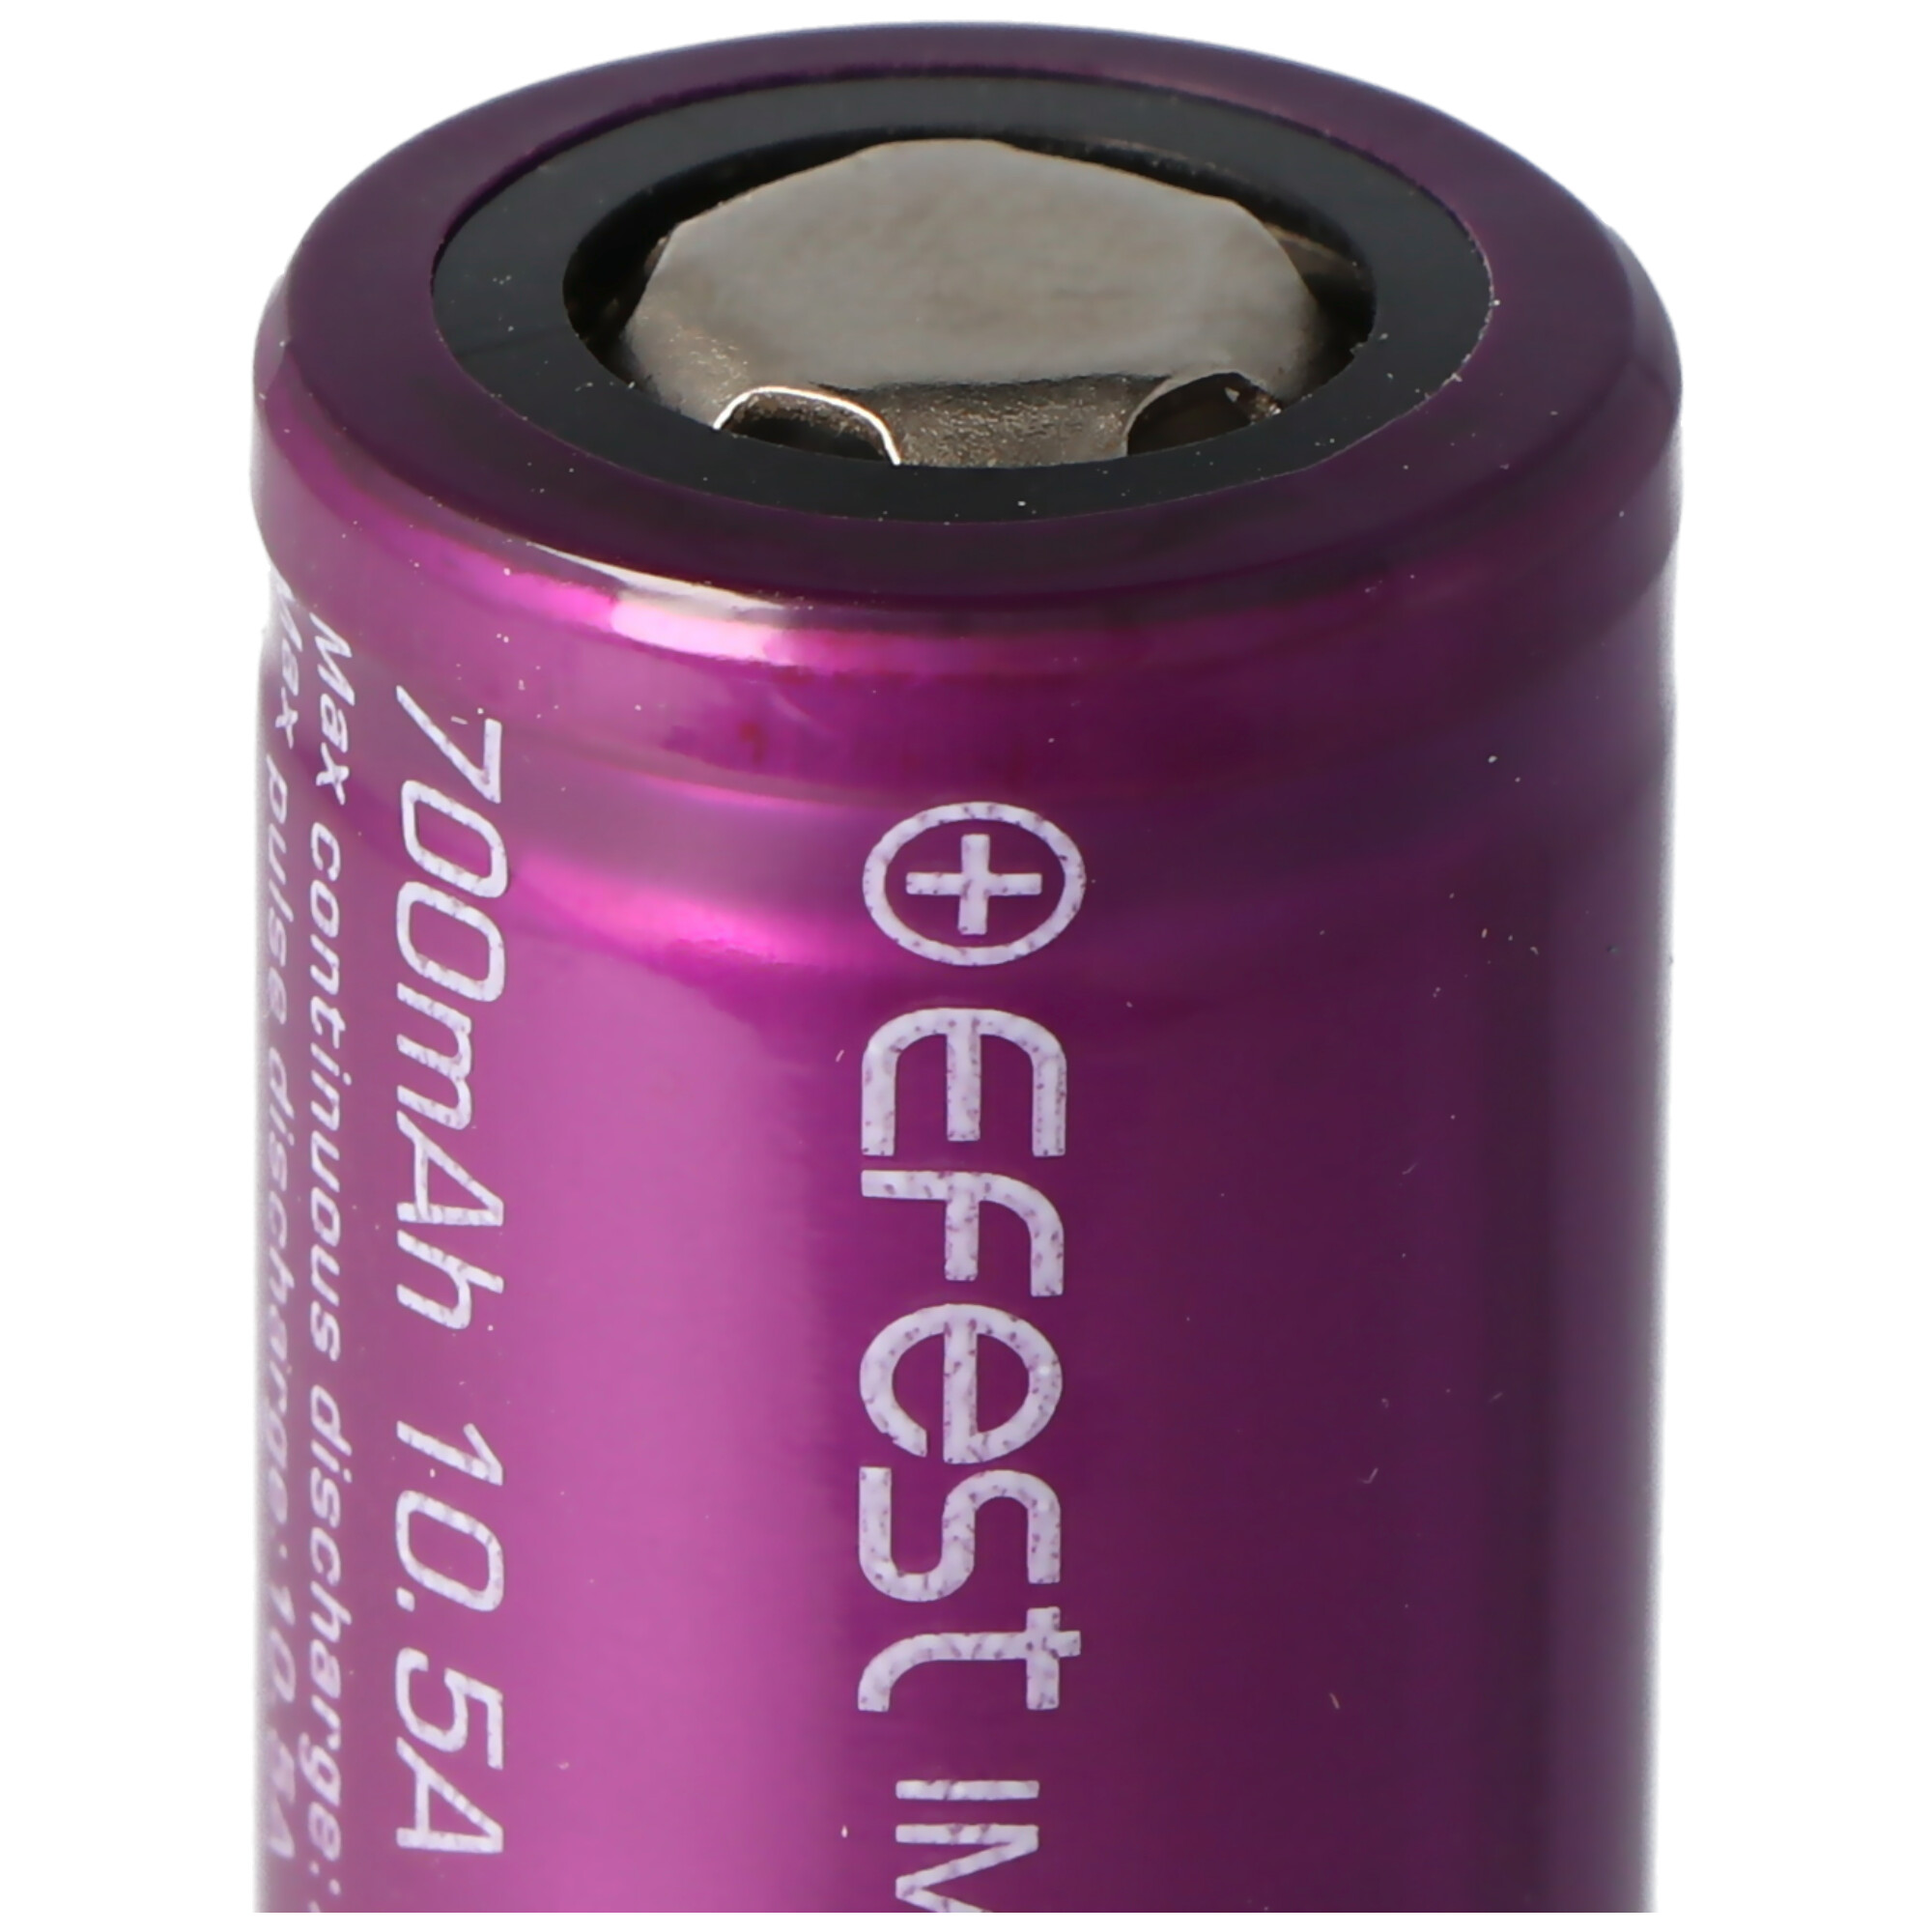 EFEST Purple IMR18350 - 700mAh 700 - mAh (Pluspol 3,7V Akku, flach) Li-Ion Li-Ion-Akku Lithium-Ionen